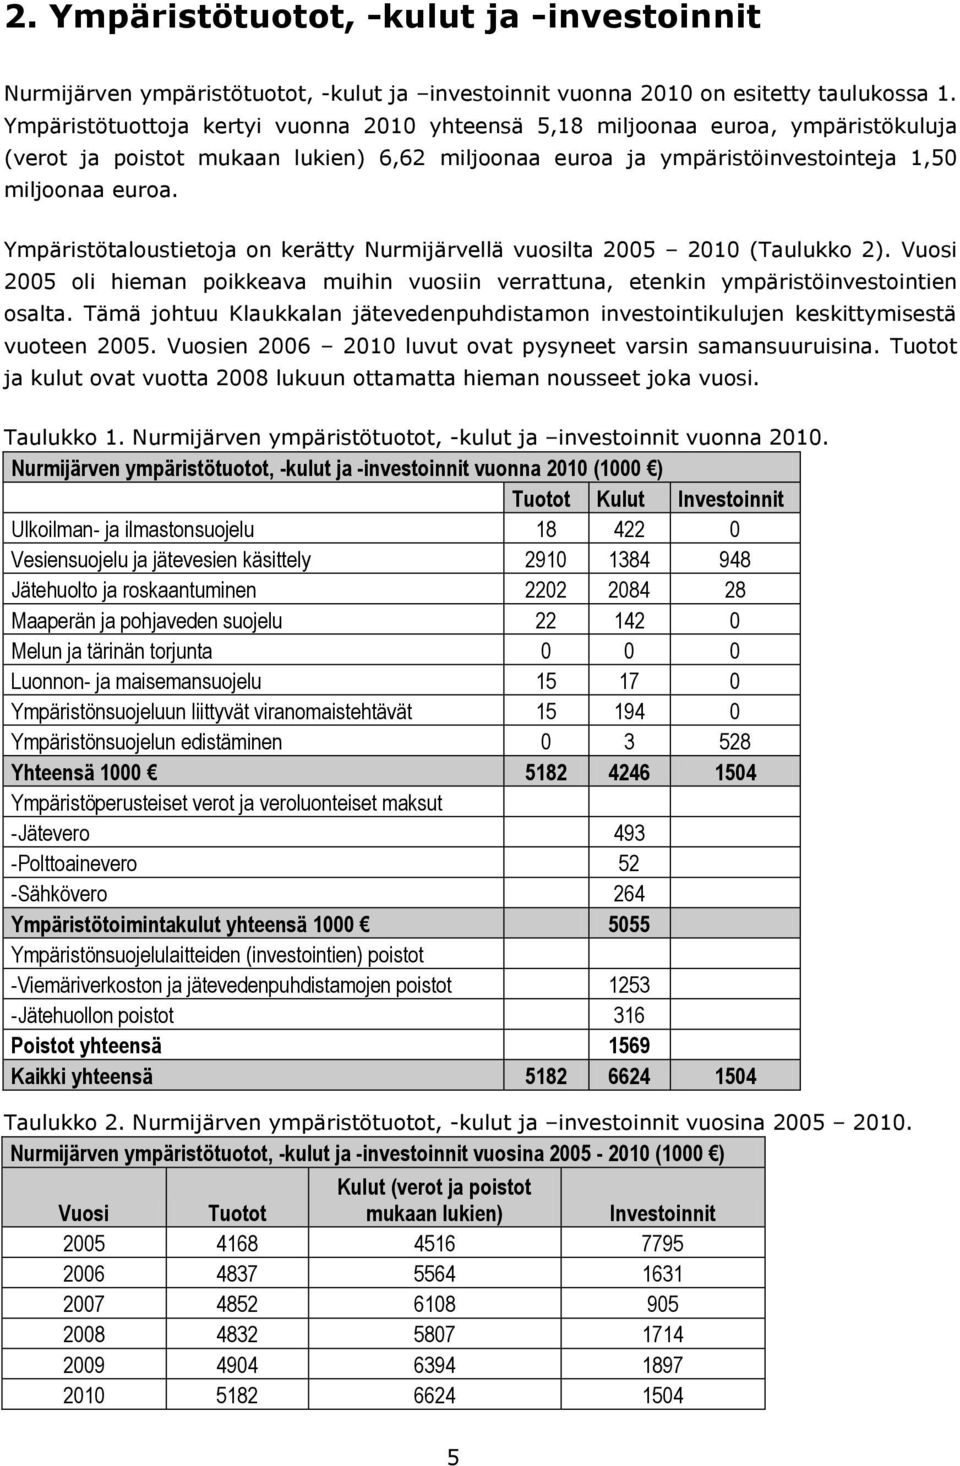 Ympäristötaloustietoja on kerätty Nurmijärvellä vuosilta 2005 2010 (Taulukko 2). Vuosi 2005 oli hieman poikkeava muihin vuosiin verrattuna, etenkin ympäristöinvestointien osalta.